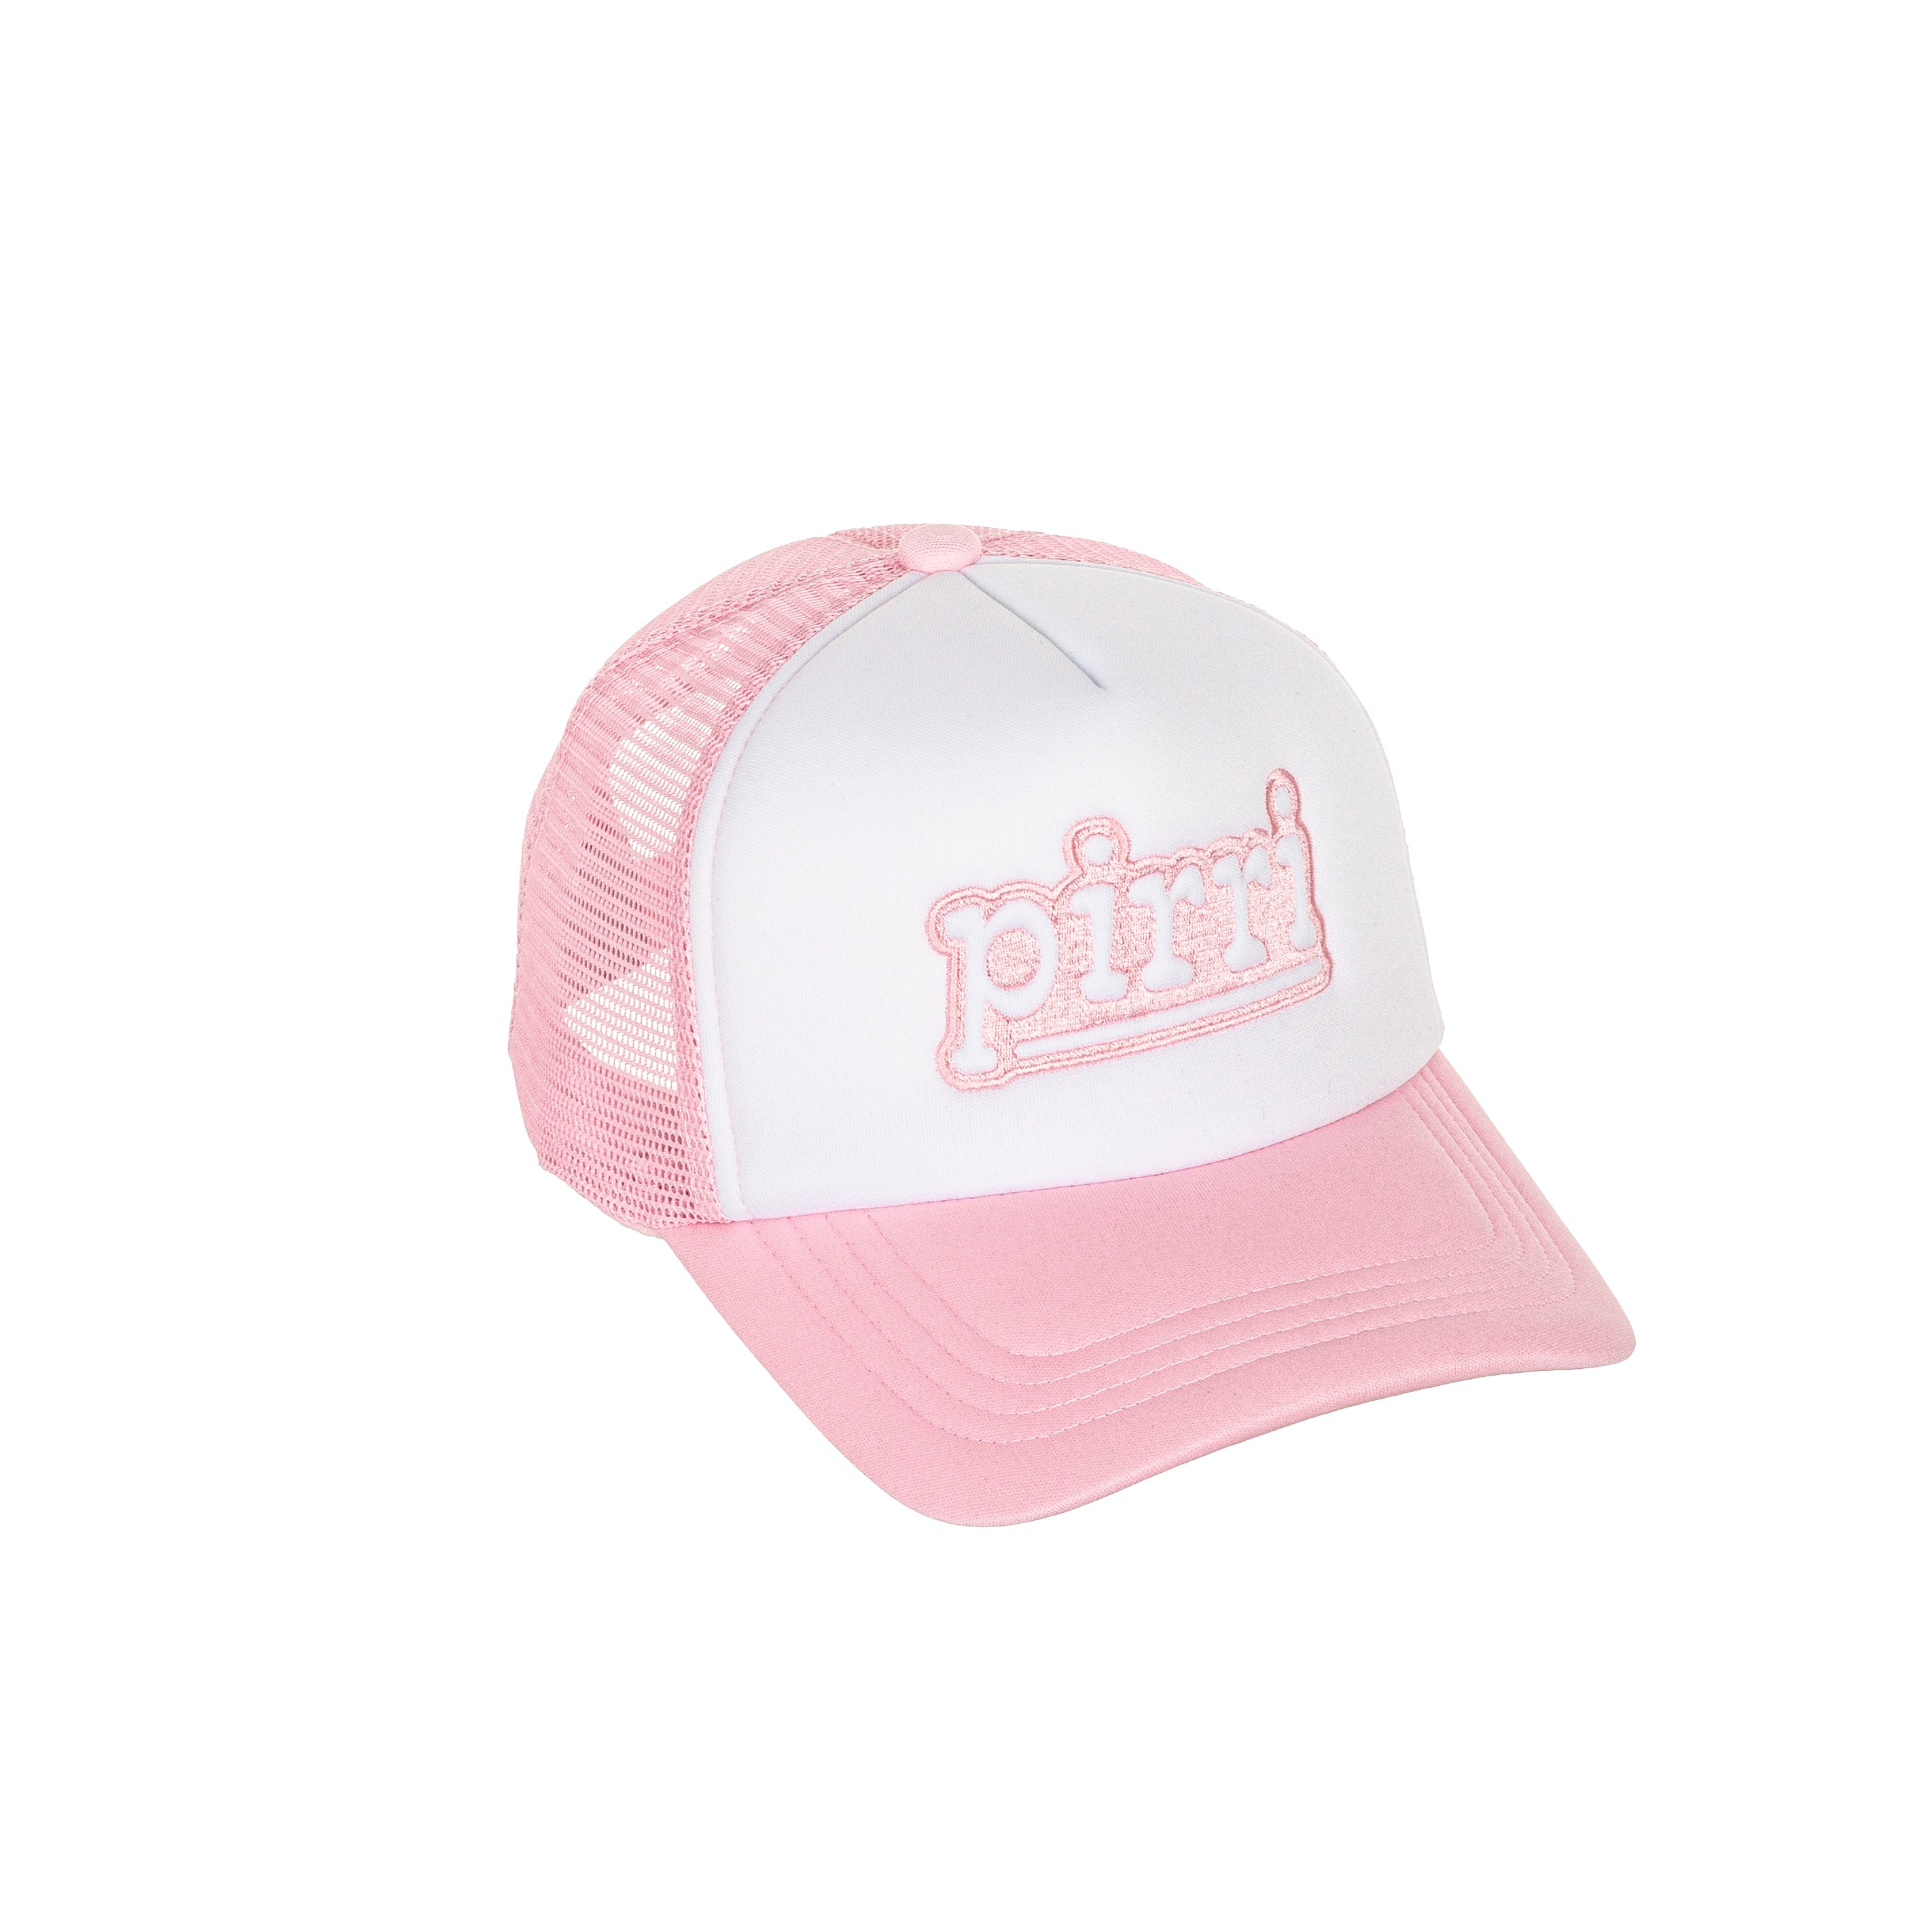 Pirri Basics Trucker Attie - Baby Pink